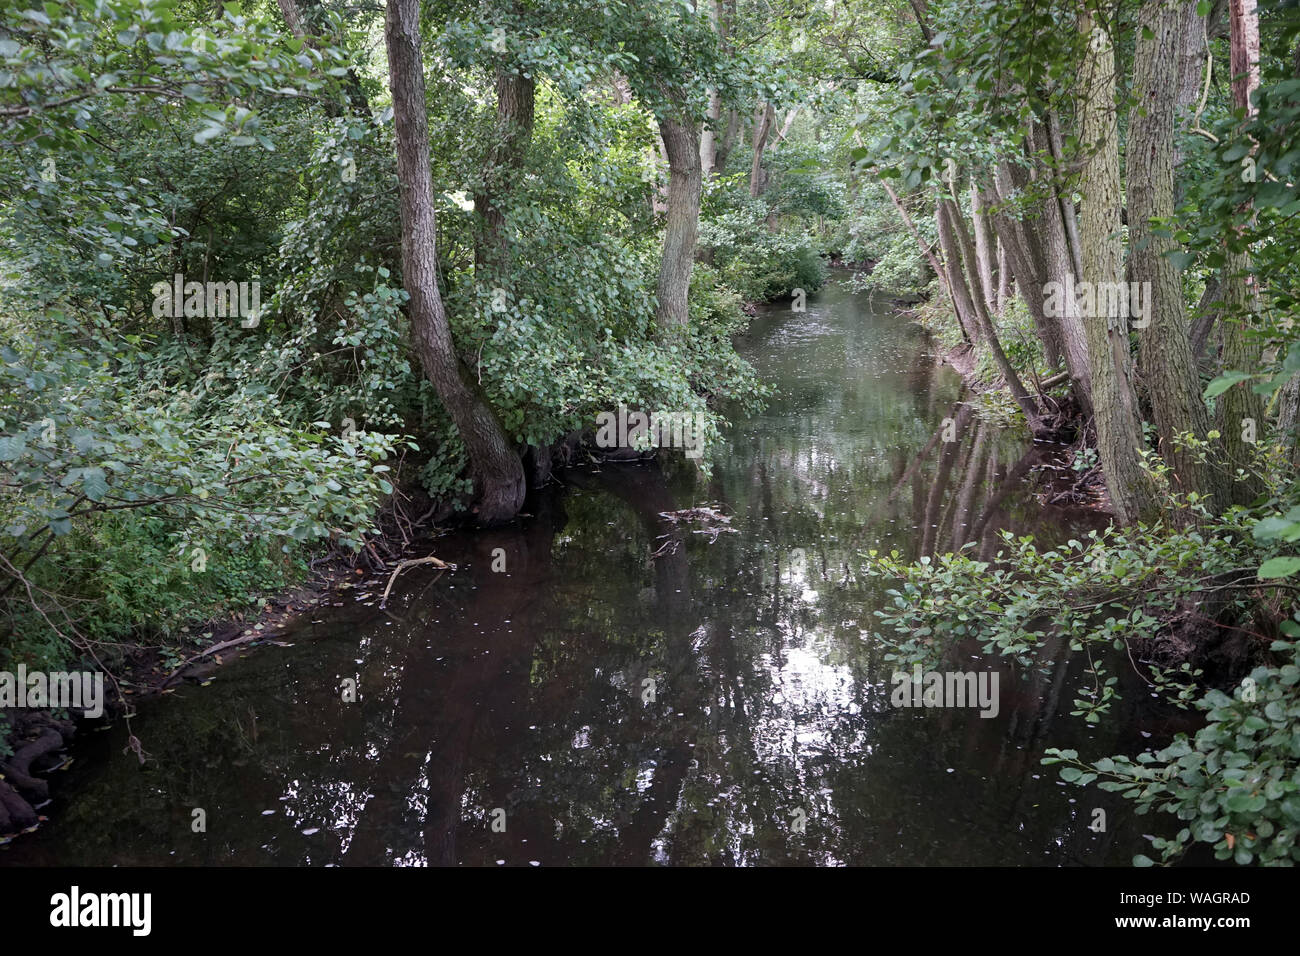 Calm river in dense forest in Denmark Stock Photo